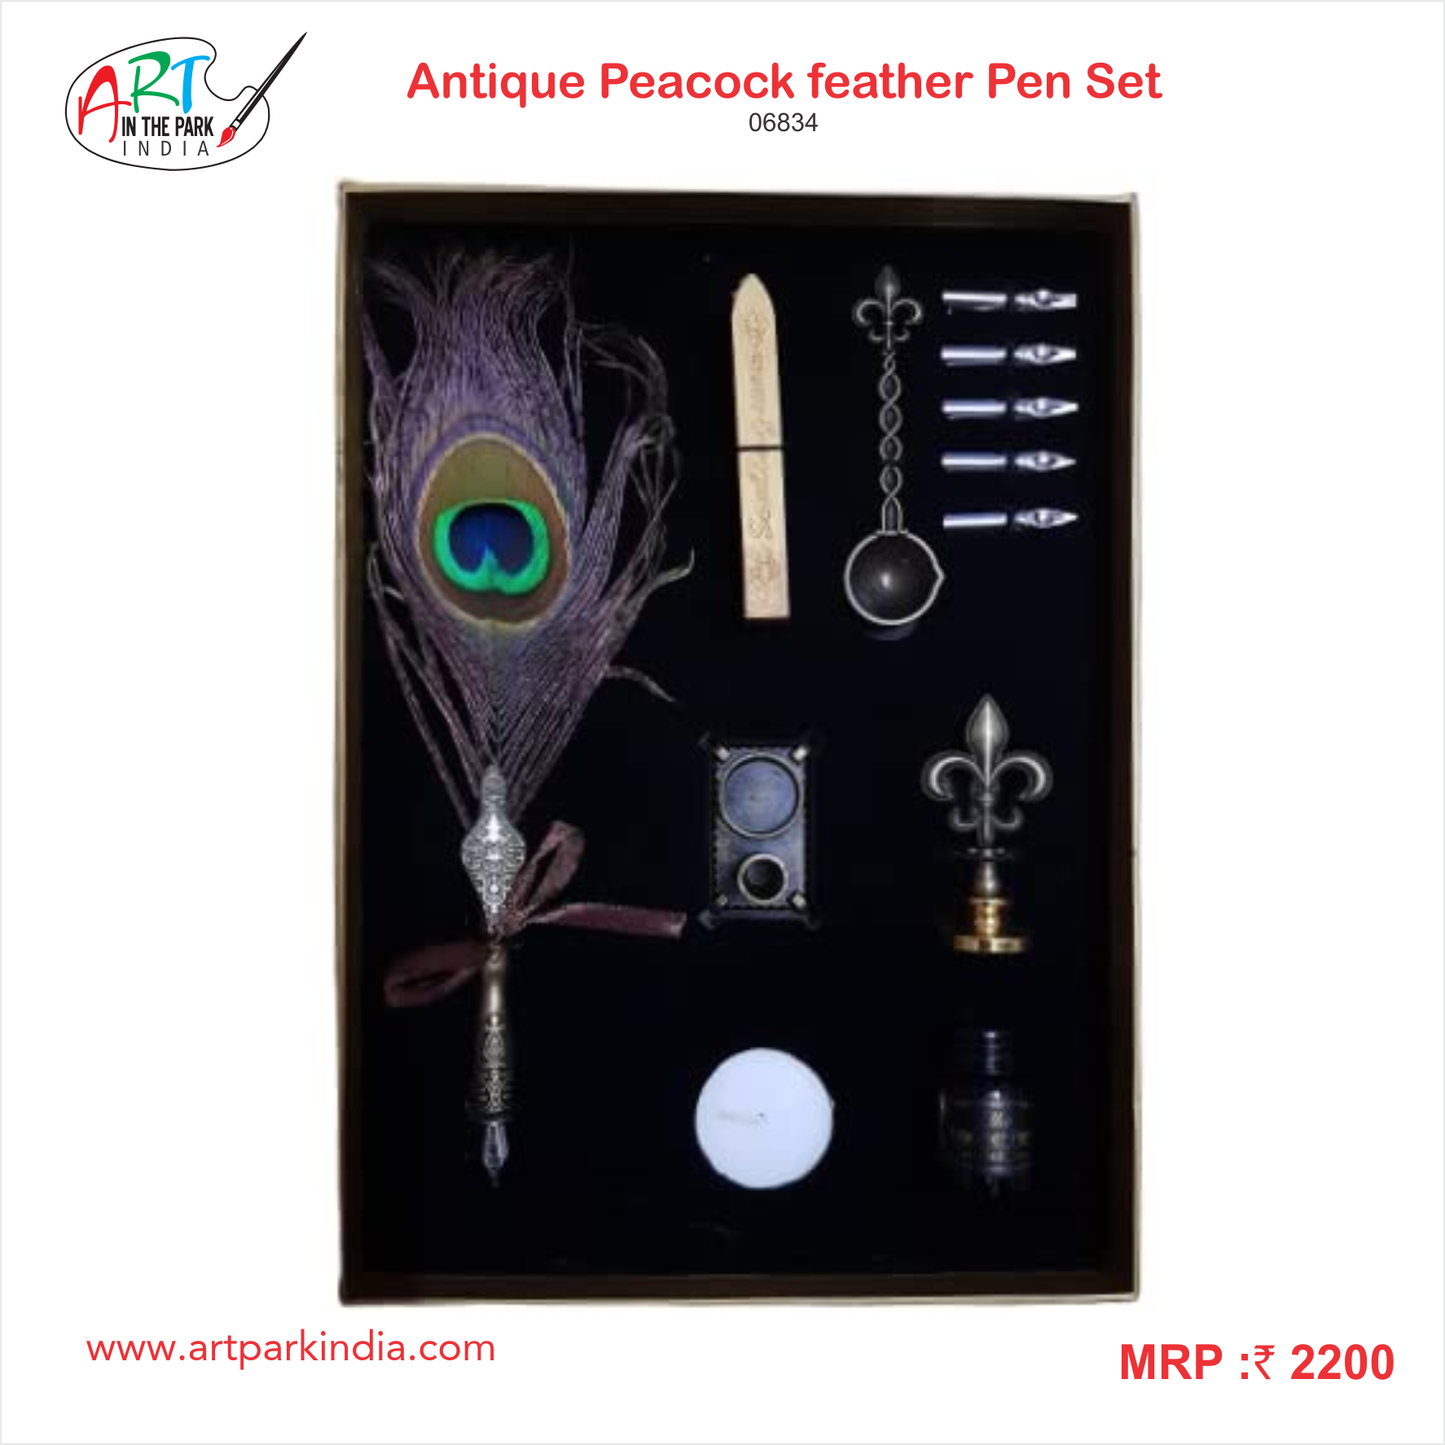 El-dorado Antique Peacock Feather Pen Set